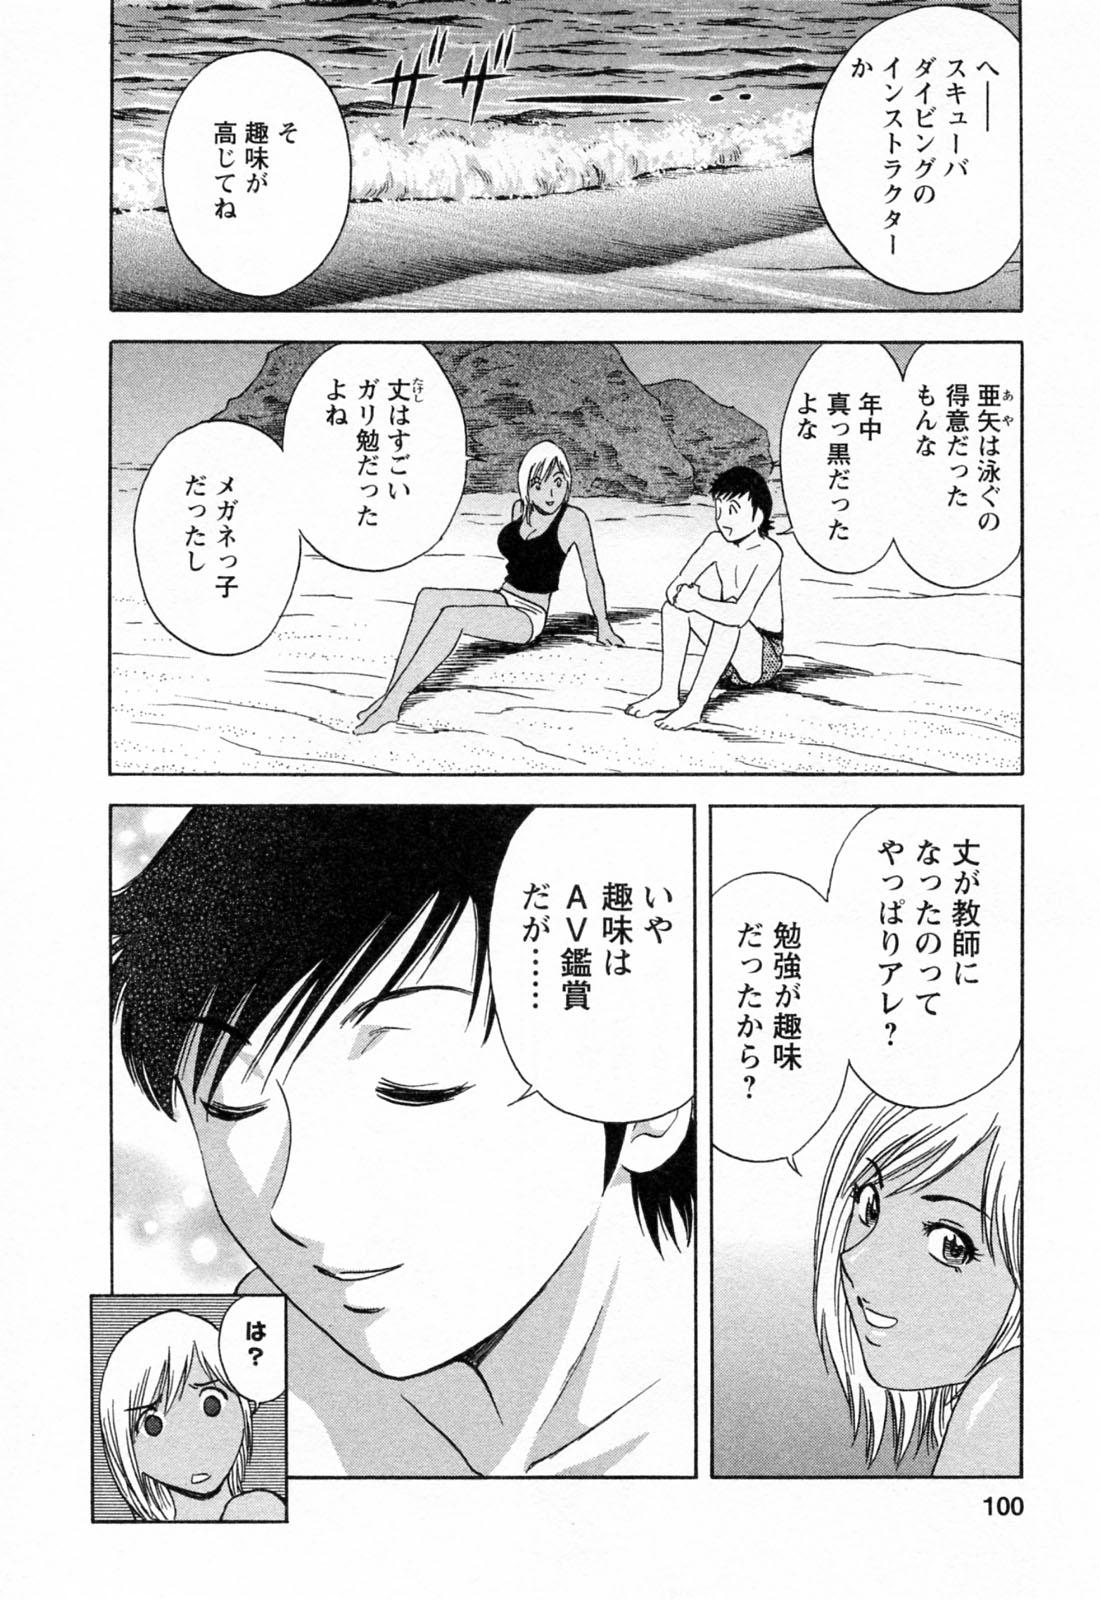 [Hidemaru] Mo-Retsu! Boin Sensei (Boing Boing Teacher) Vol.4 101